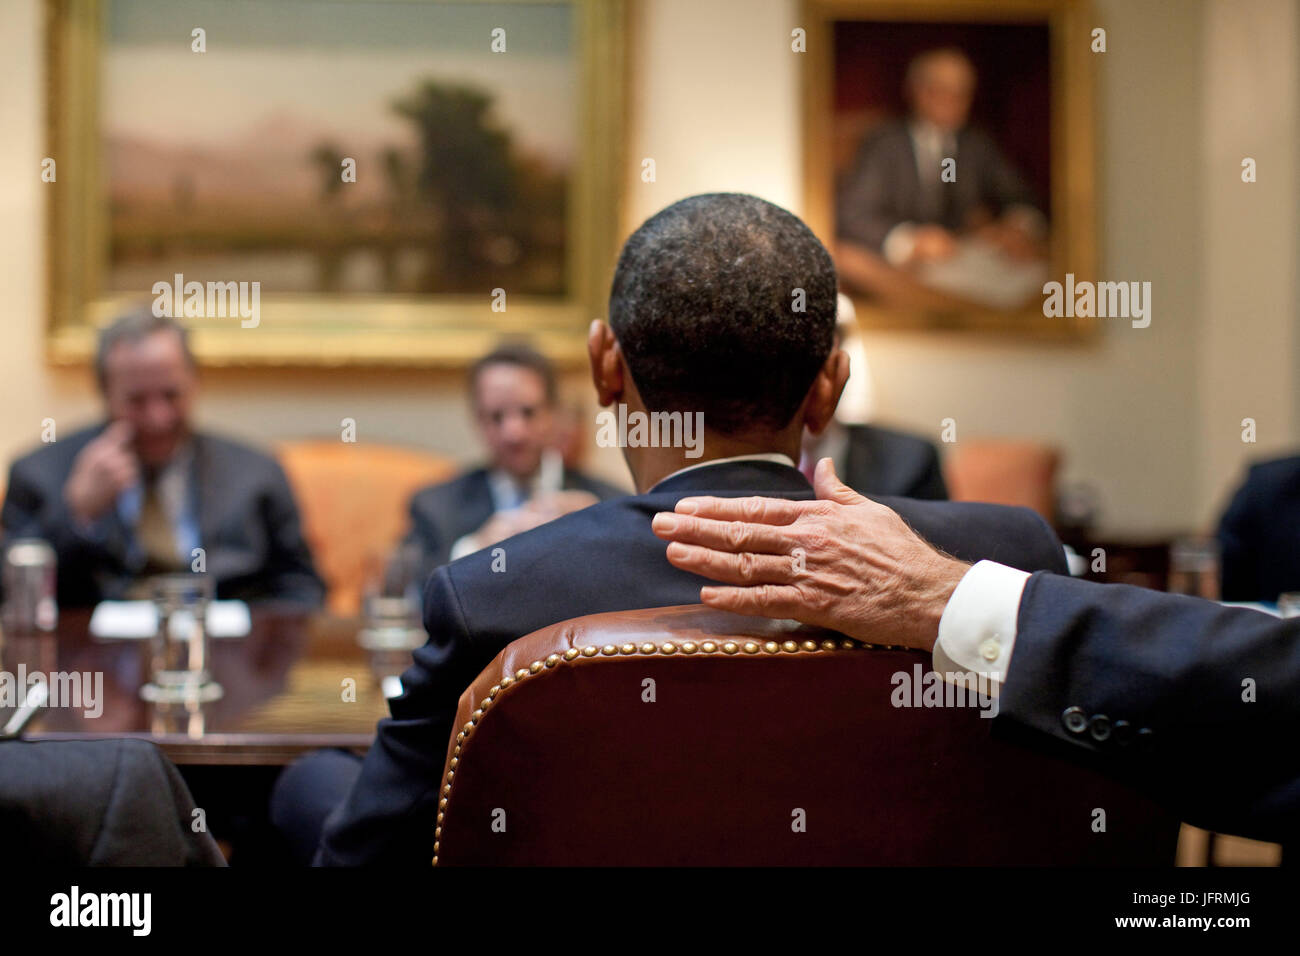 Le président Barack Obama participe à une réunion économique dans la Roosevelt Room de la Maison Blanche 3/24/09. Photo Officiel de la Maison Blanche par Pete Souza Banque D'Images